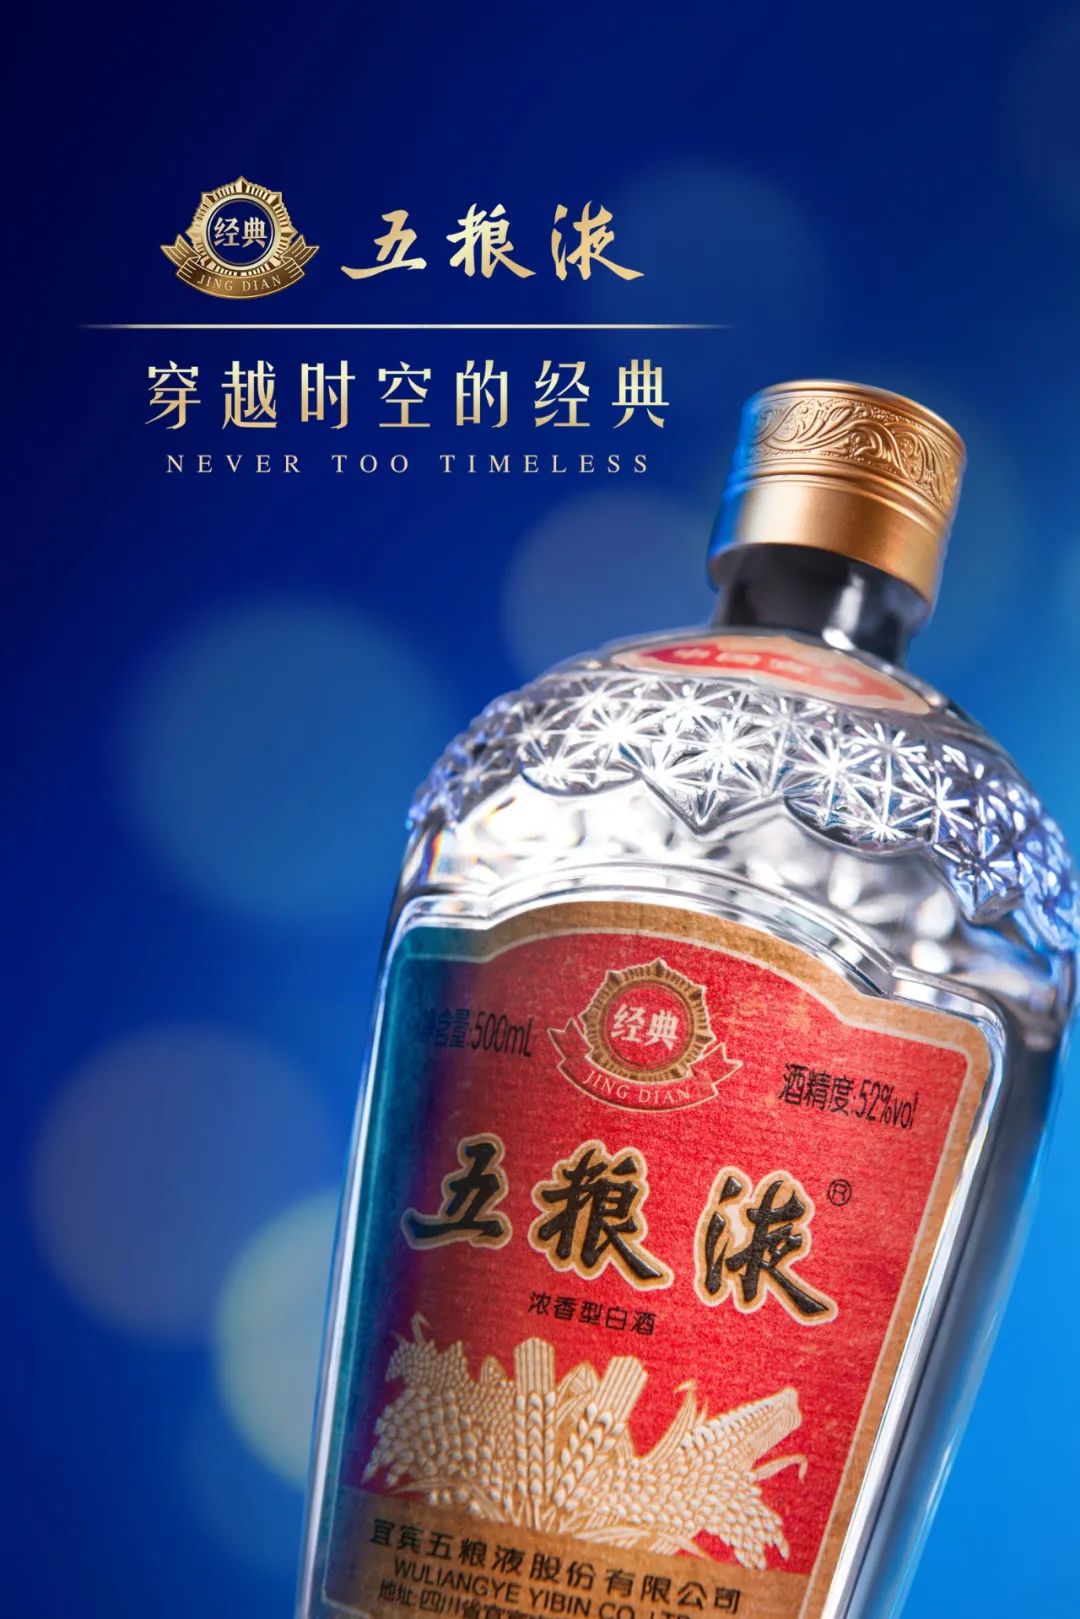 中国次高端白酒领军品牌之一——五粮印象为什么备受市场青睐